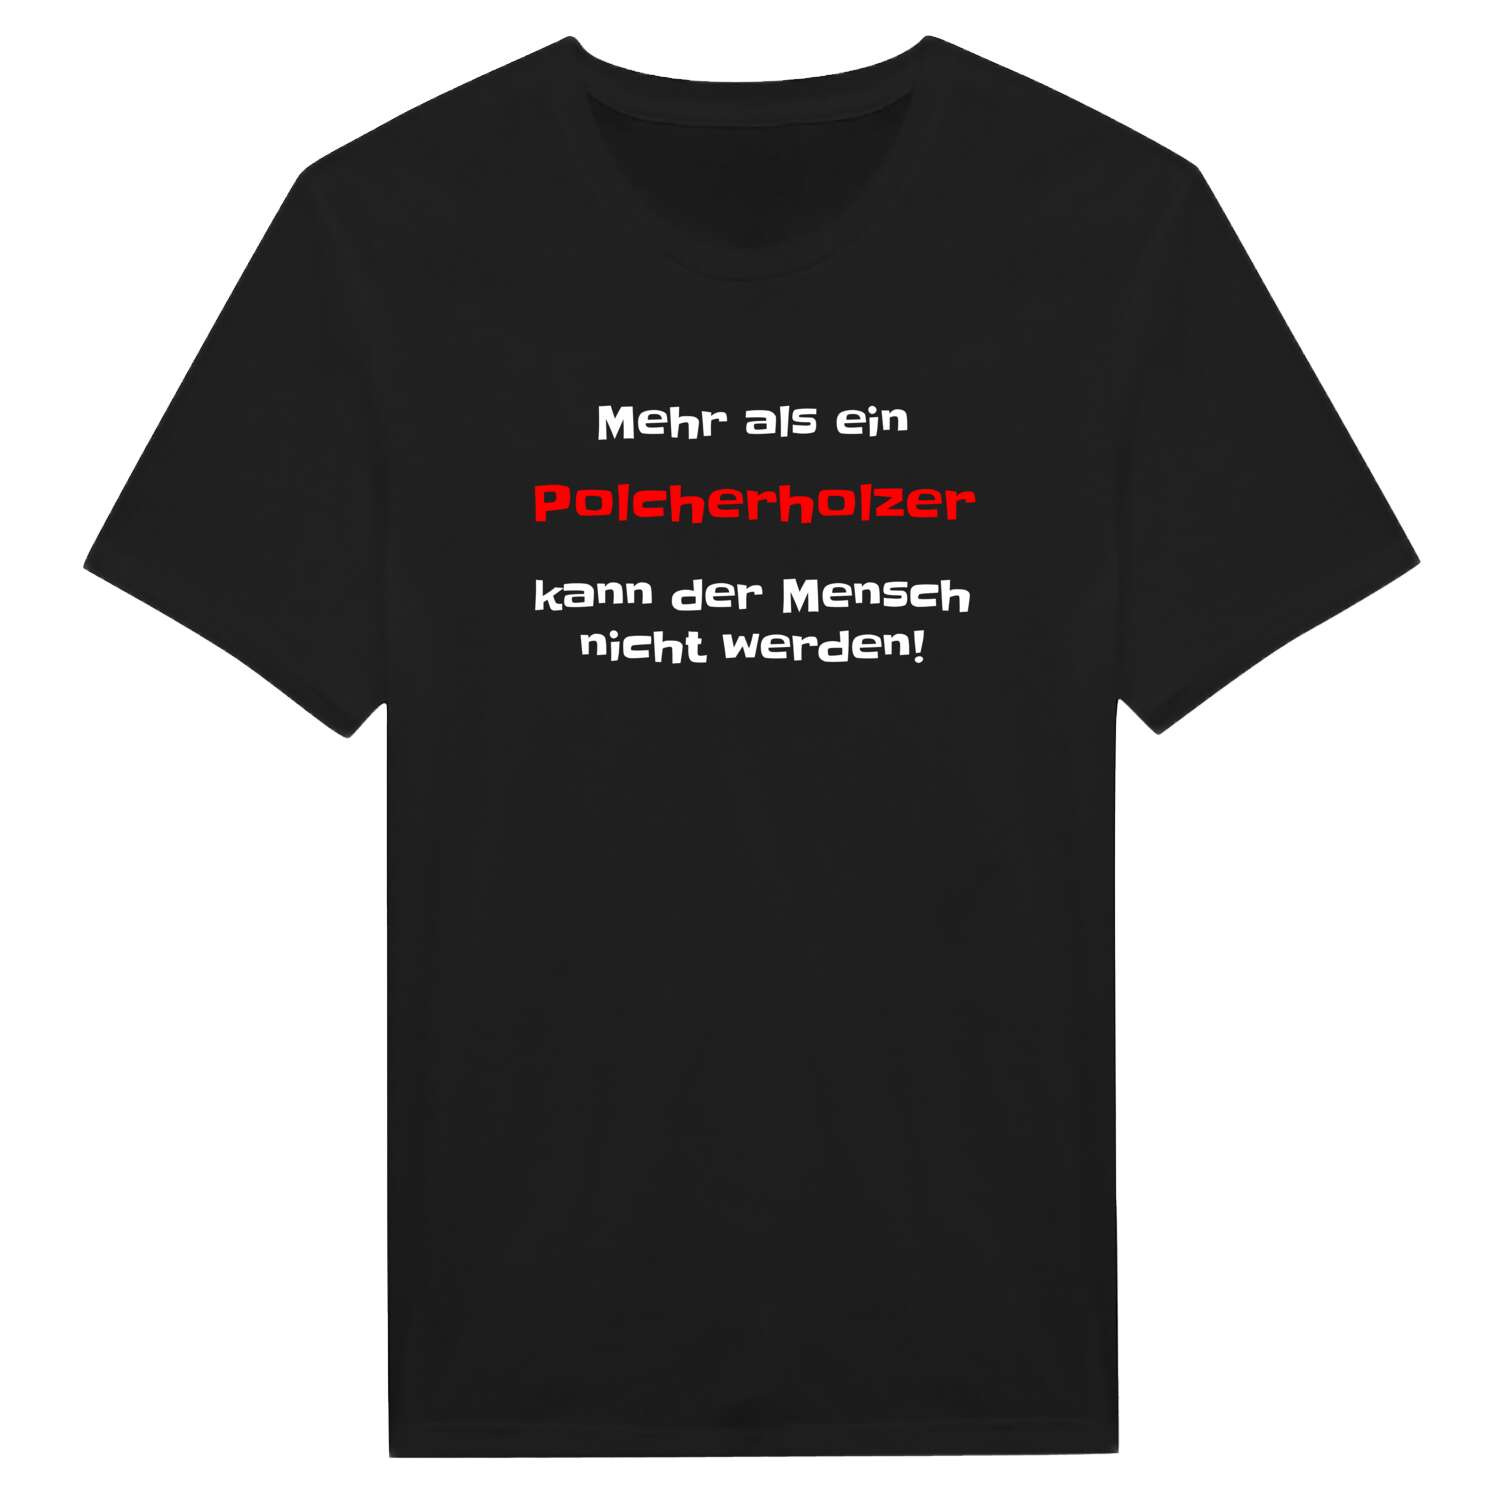 Polcherholz T-Shirt »Mehr als ein«